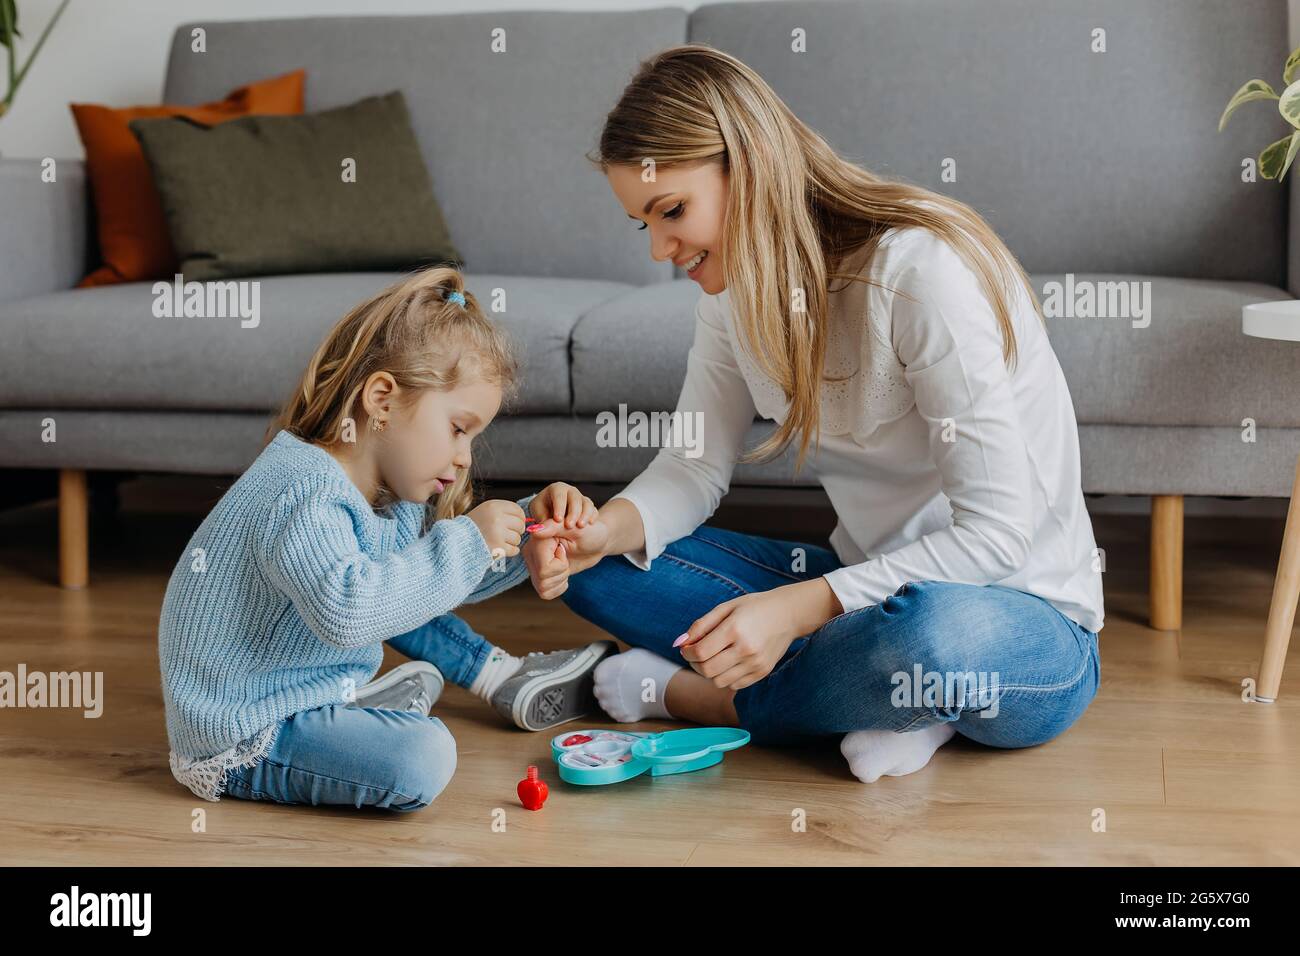 Mère et petite fille peignent leurs ongles avec du vernis à ongles jouet. Enfant jouant avec maman à la maison. Concept de bonne parentalité et enfance heureuse, famille Banque D'Images